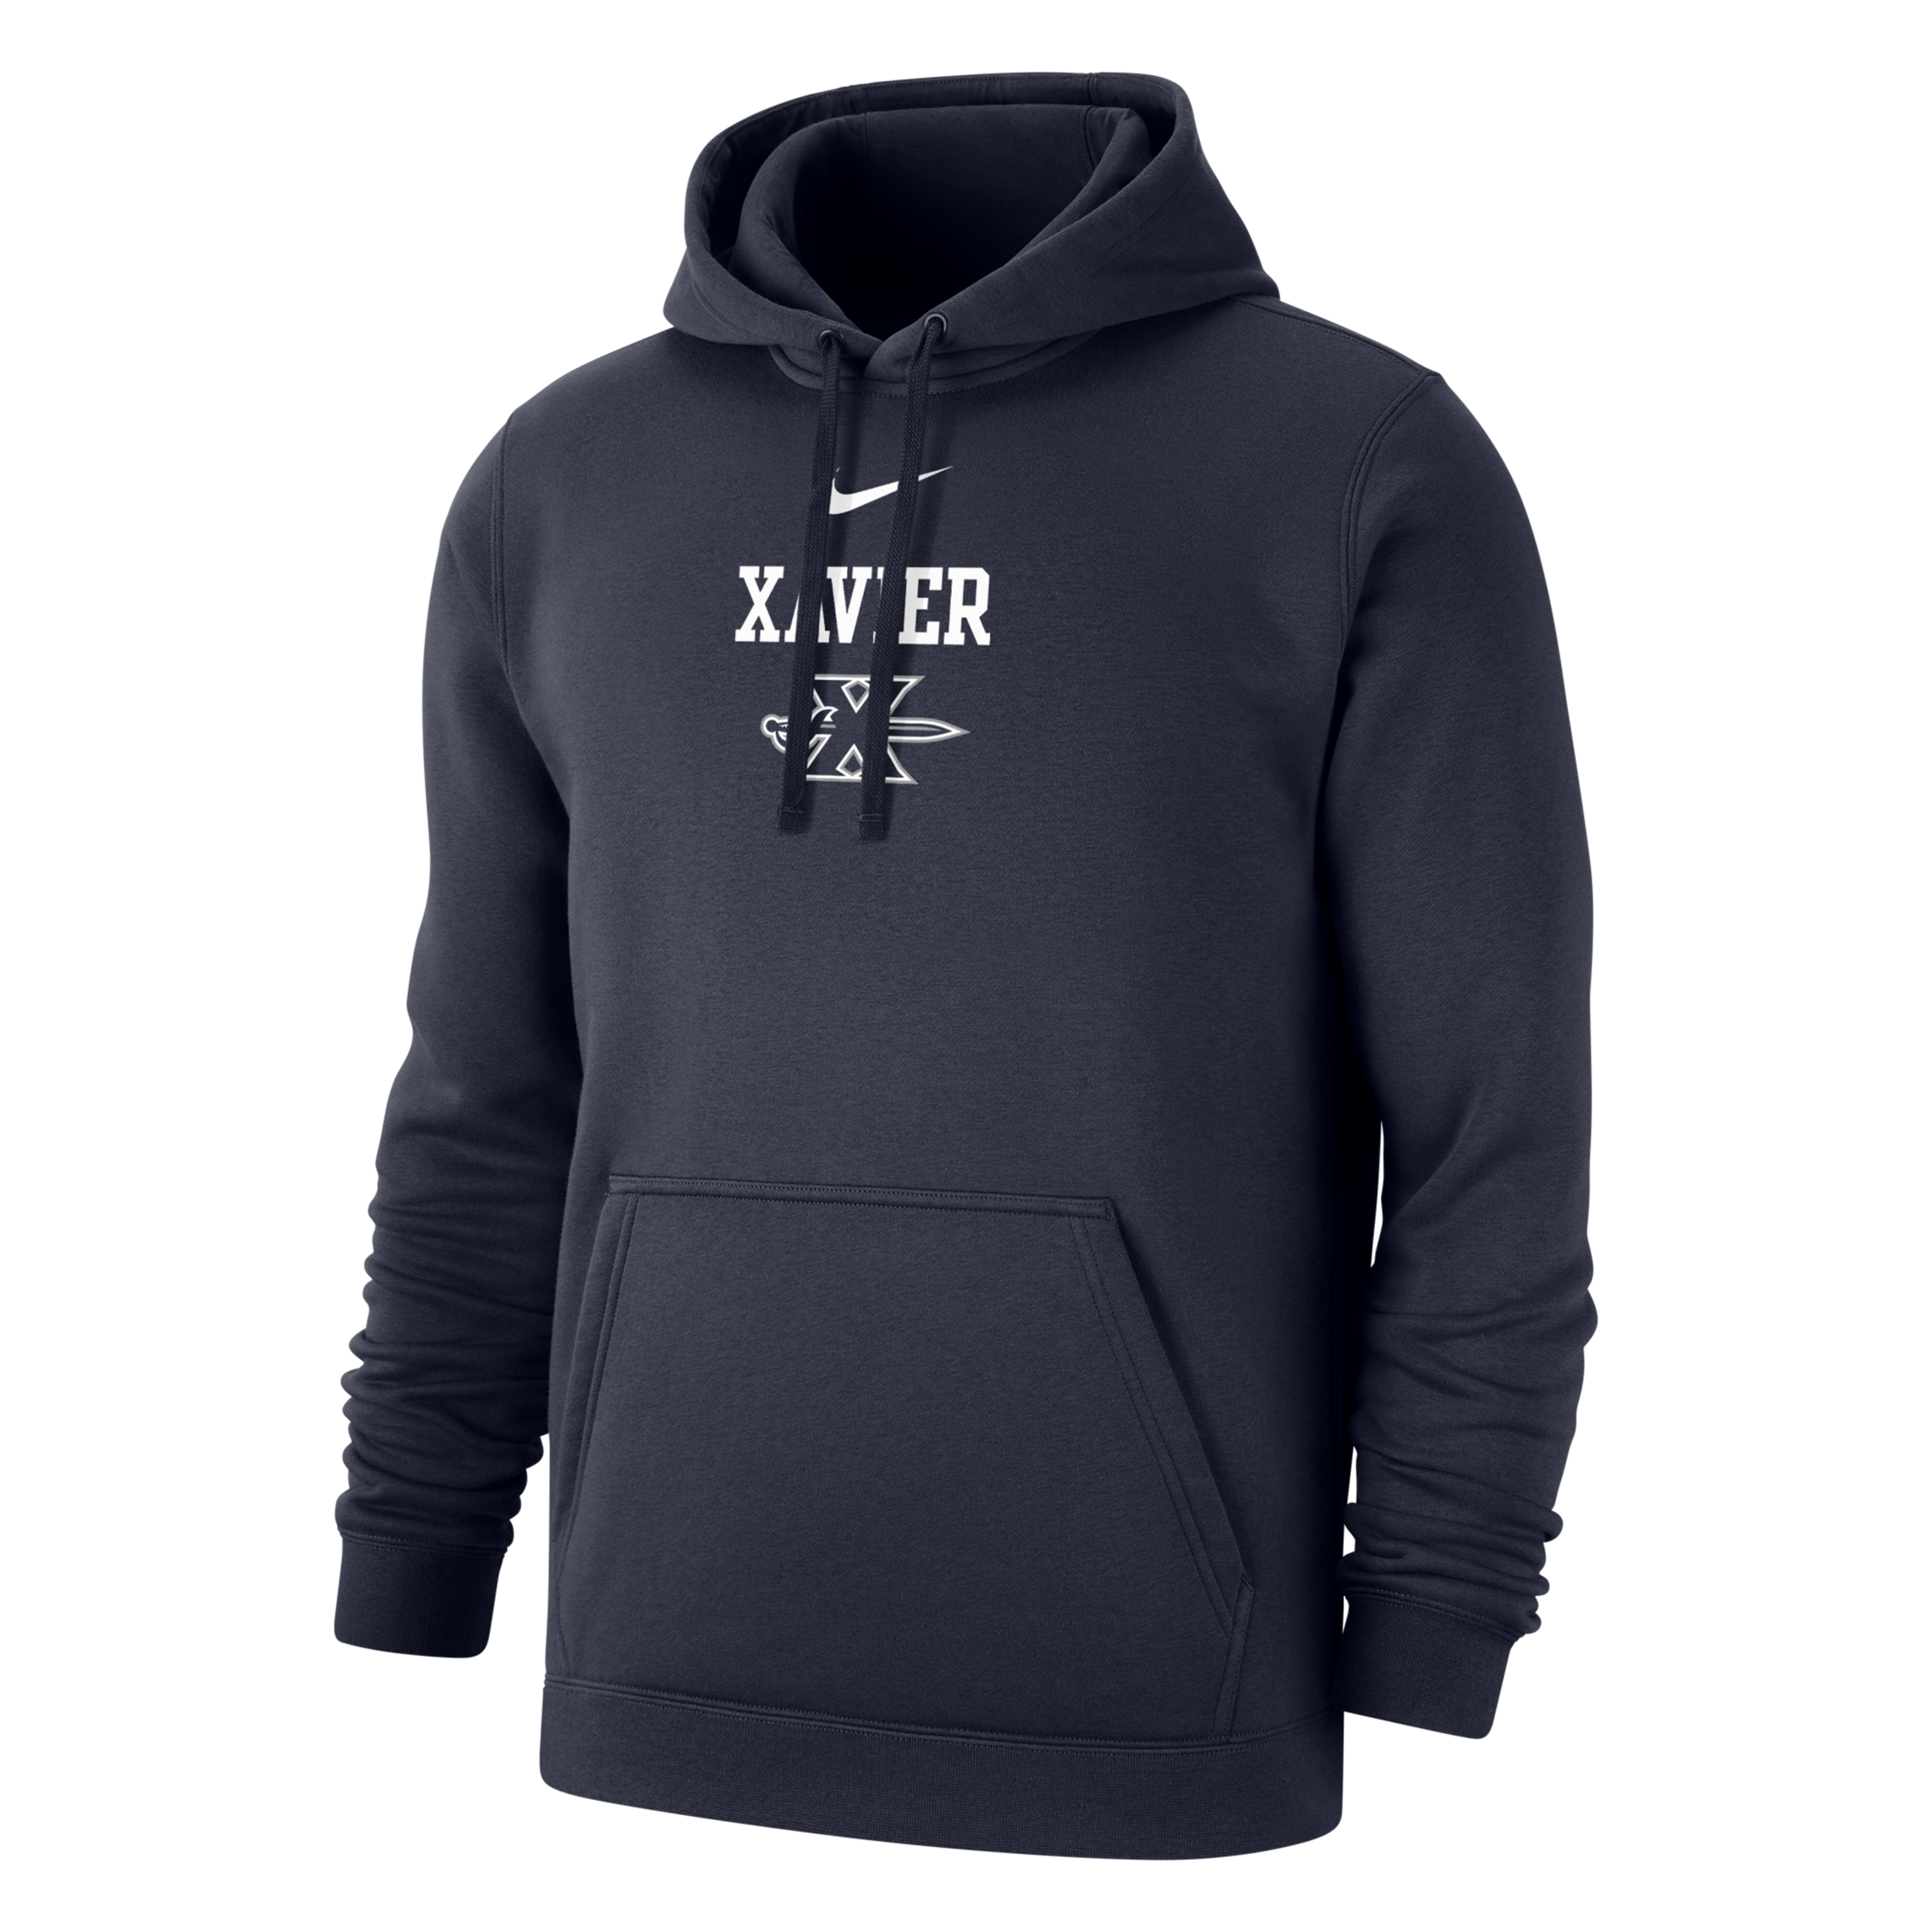 Nike Xavier Club Fleece  Men's College Hoodie In Black